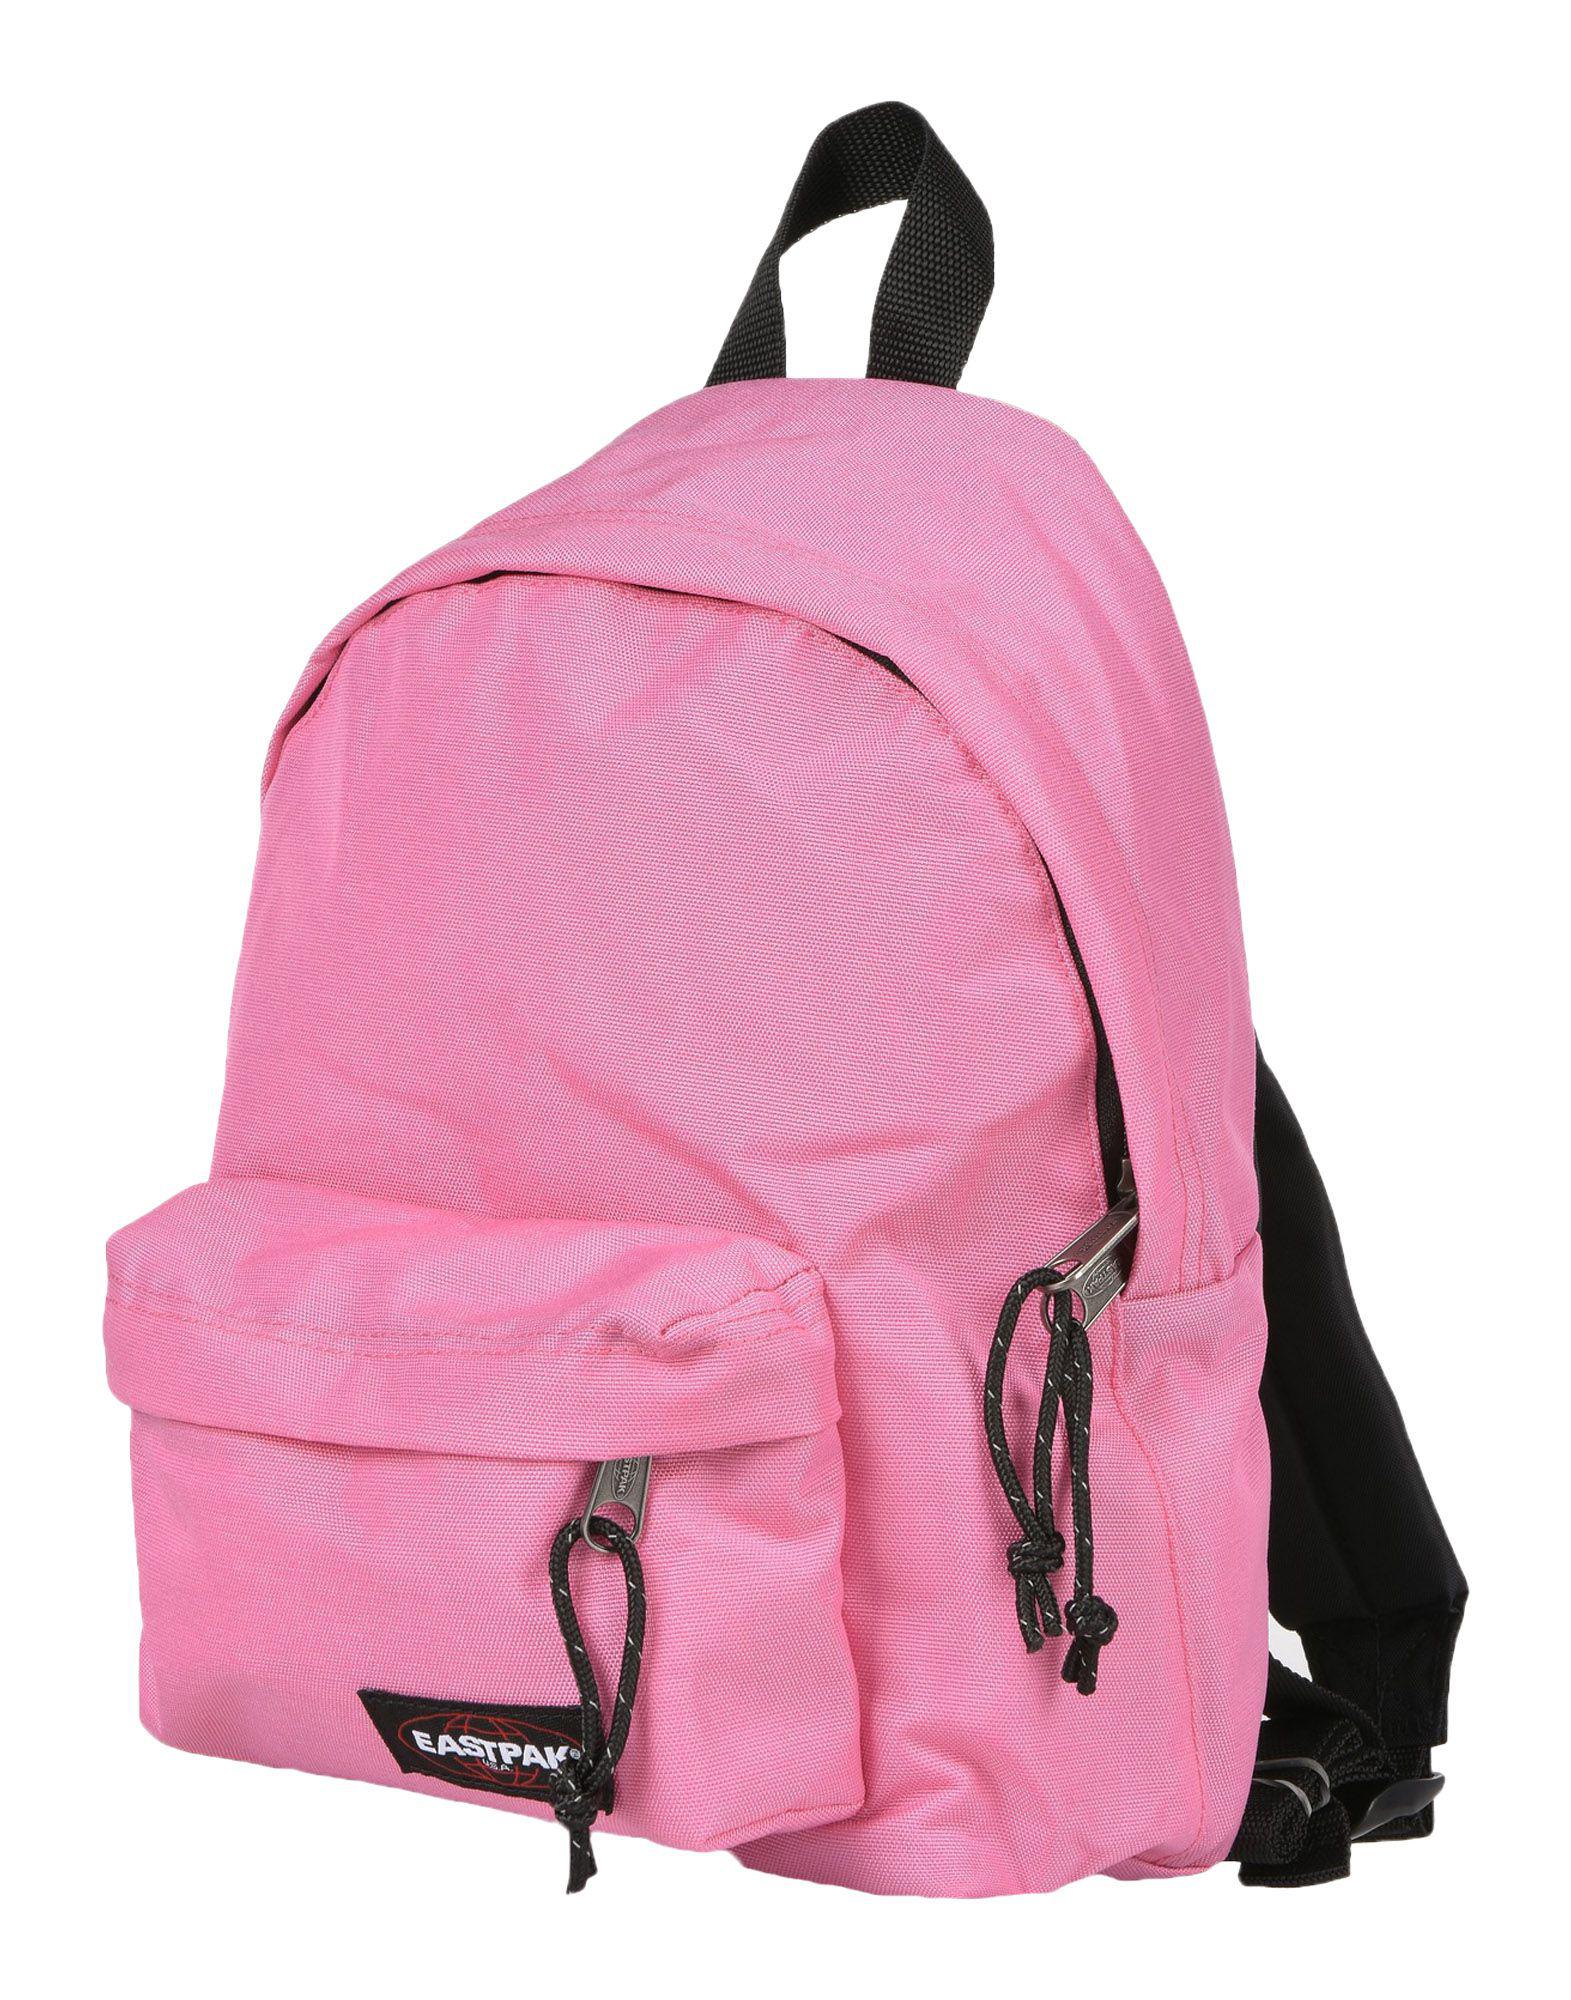 Lyst - Eastpak Backpacks & Bum Bags in Pink